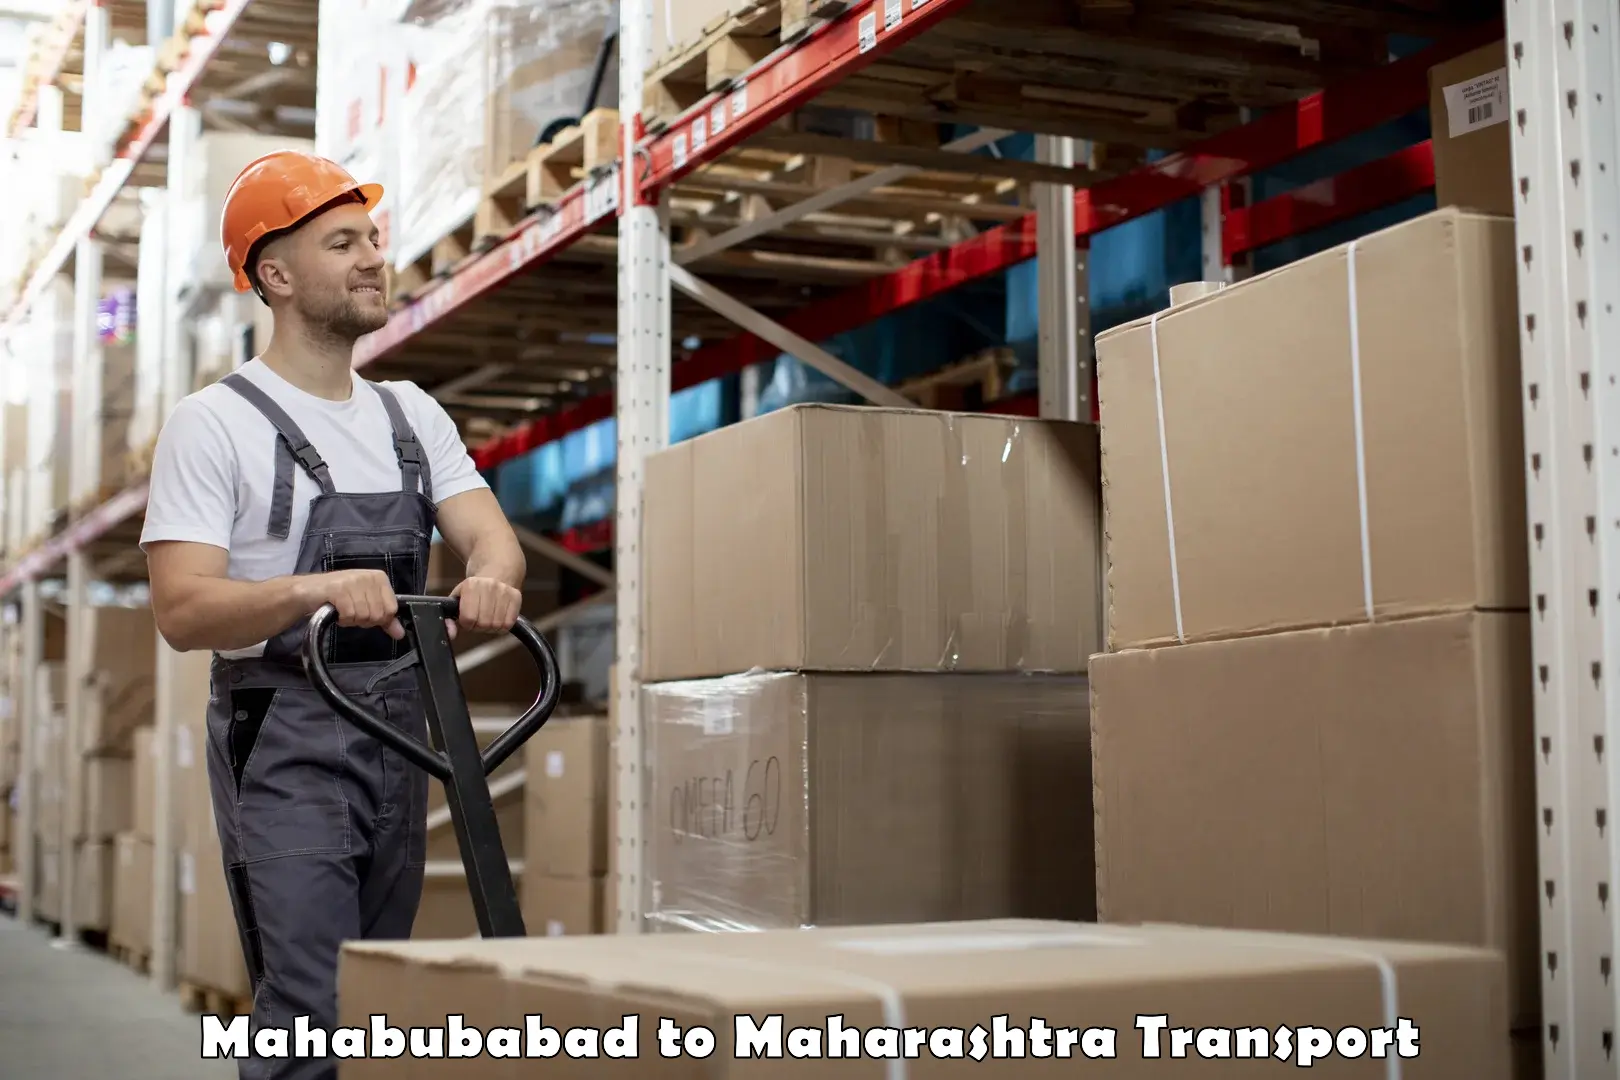 Daily parcel service transport Mahabubabad to Maharashtra